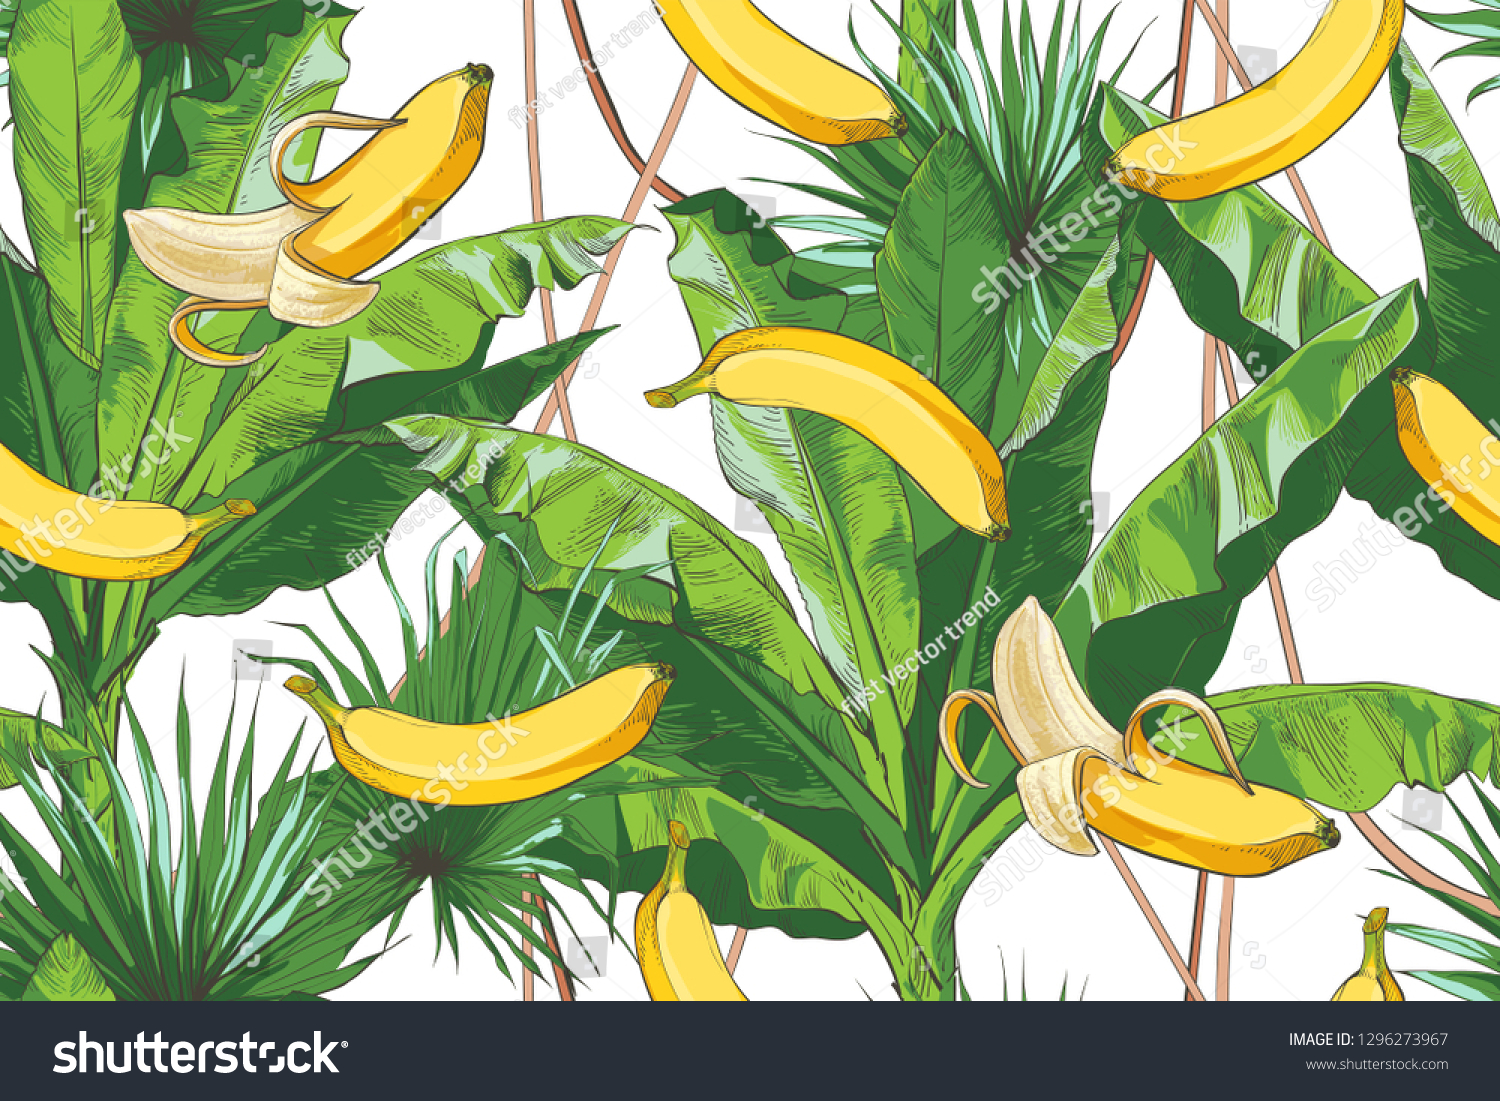 Банановая Пальма в мультиках